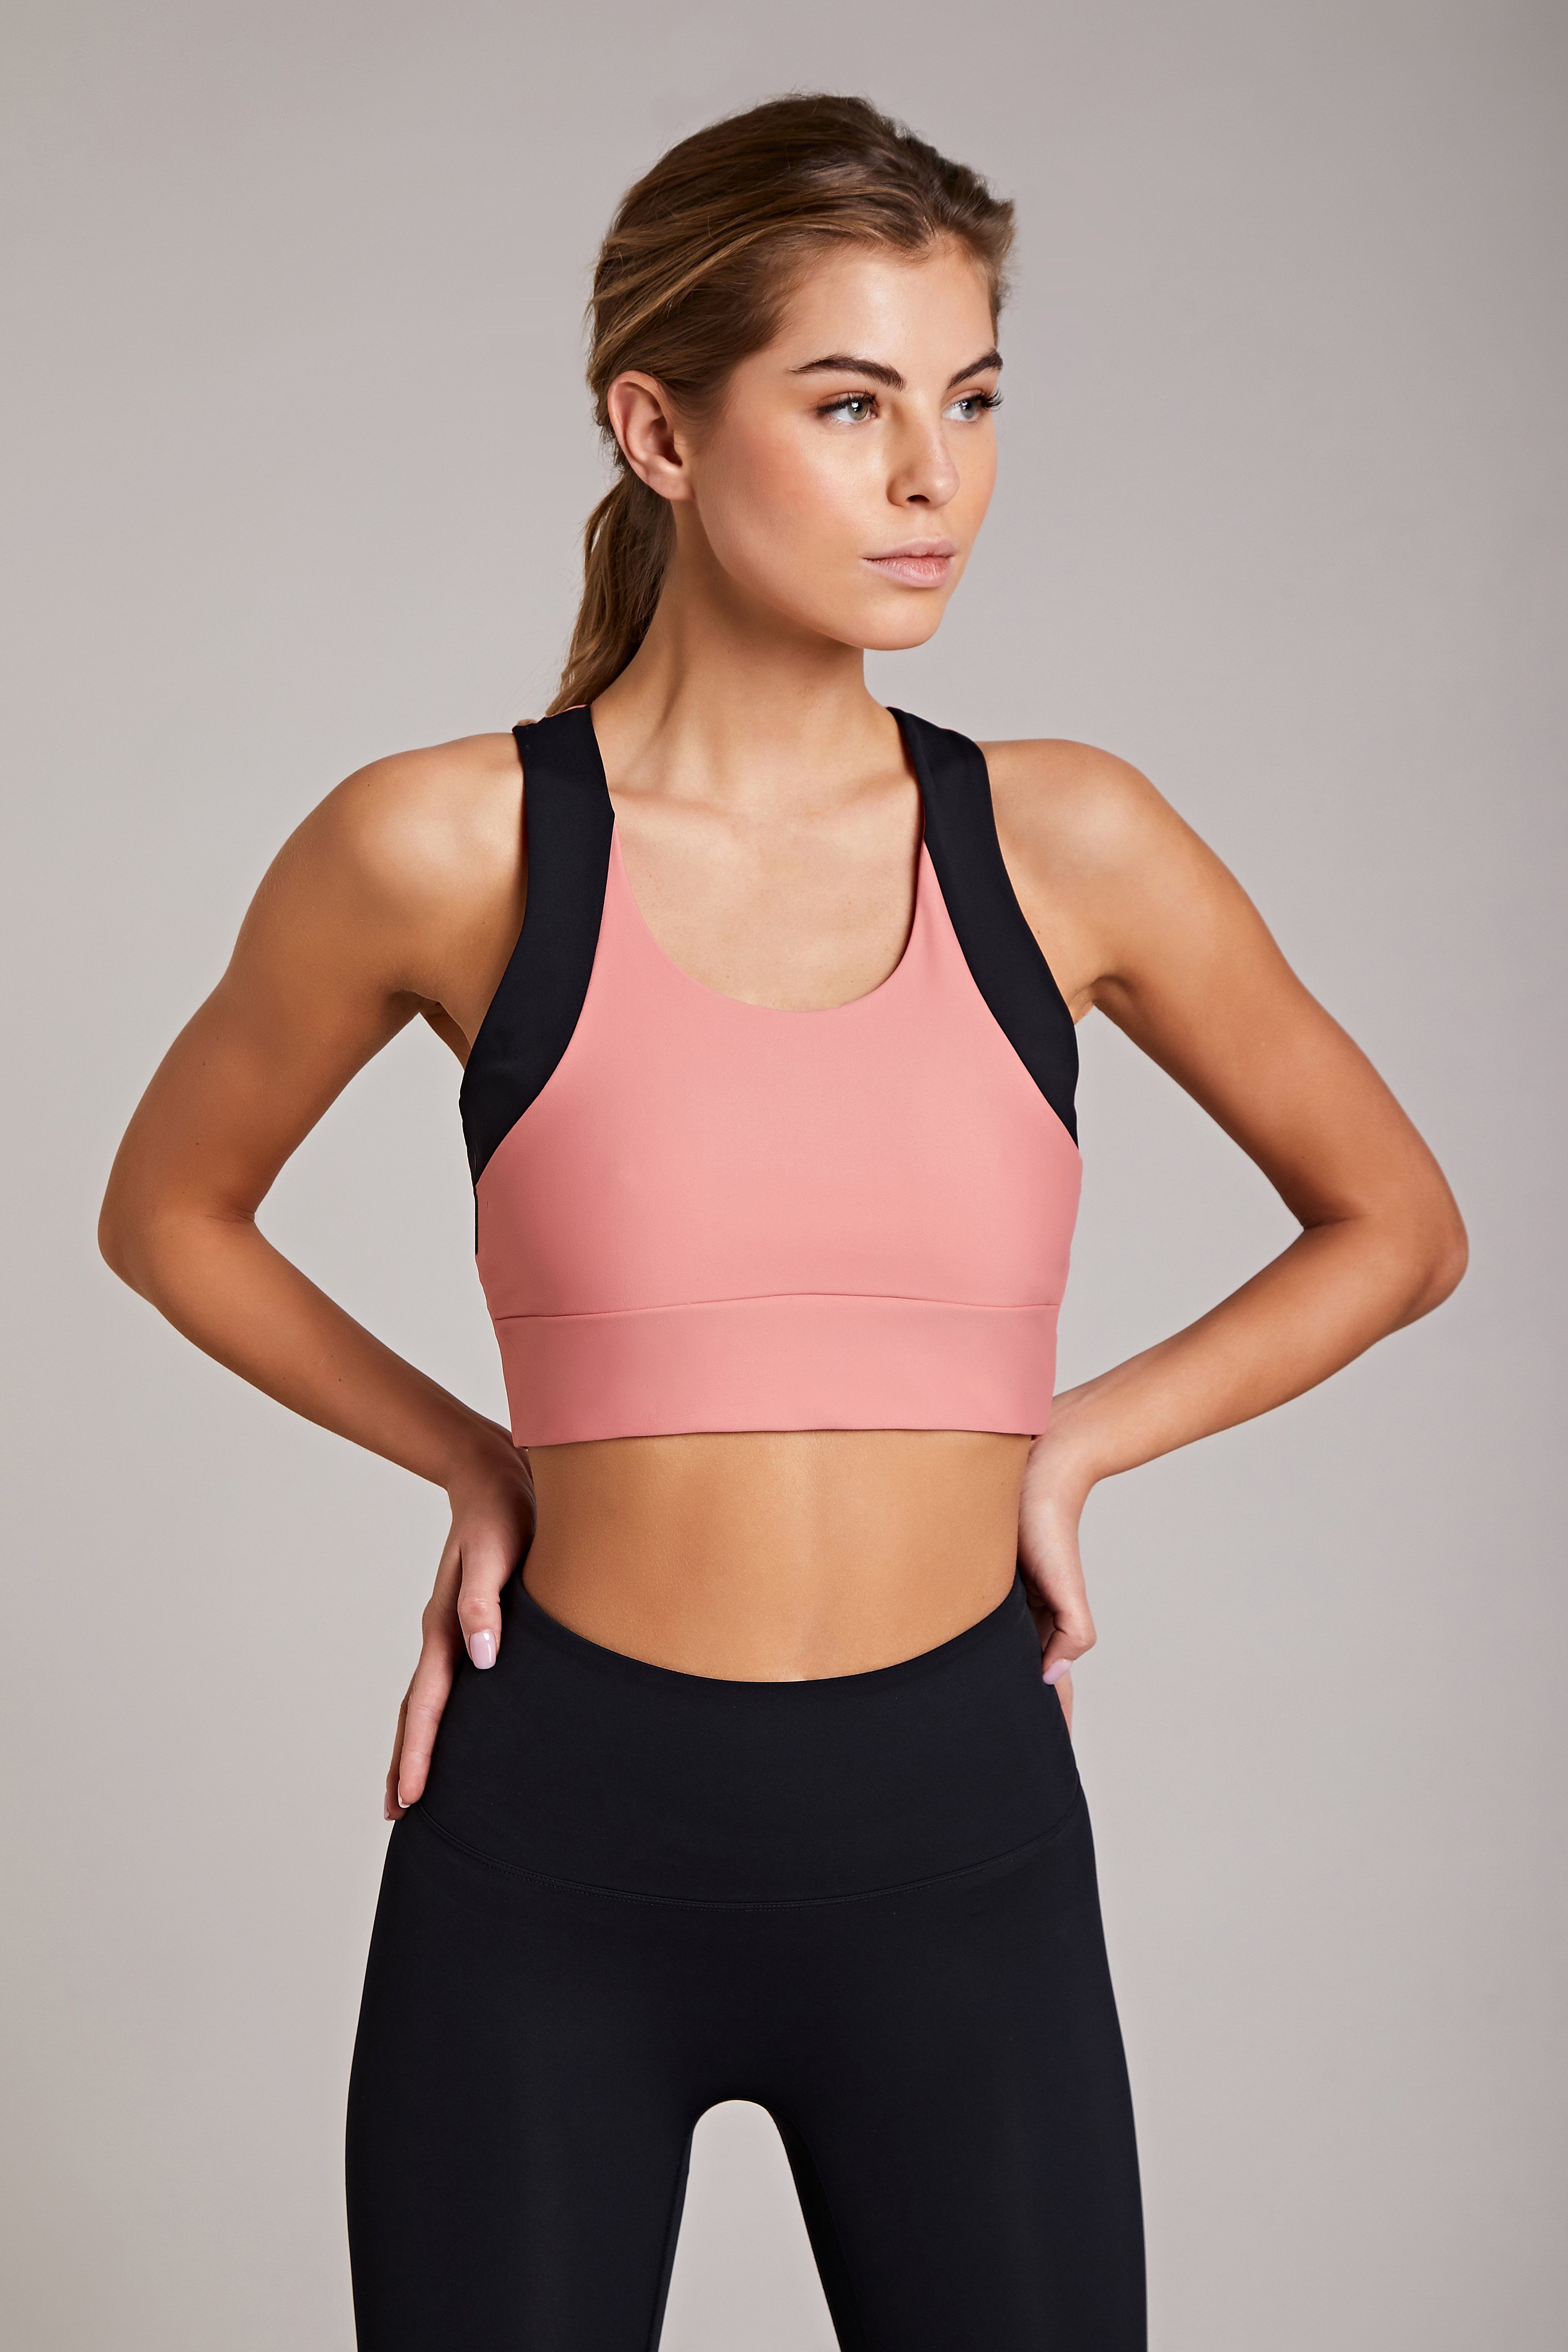 High neck sports bra - Activewear manufacturer Sportswear